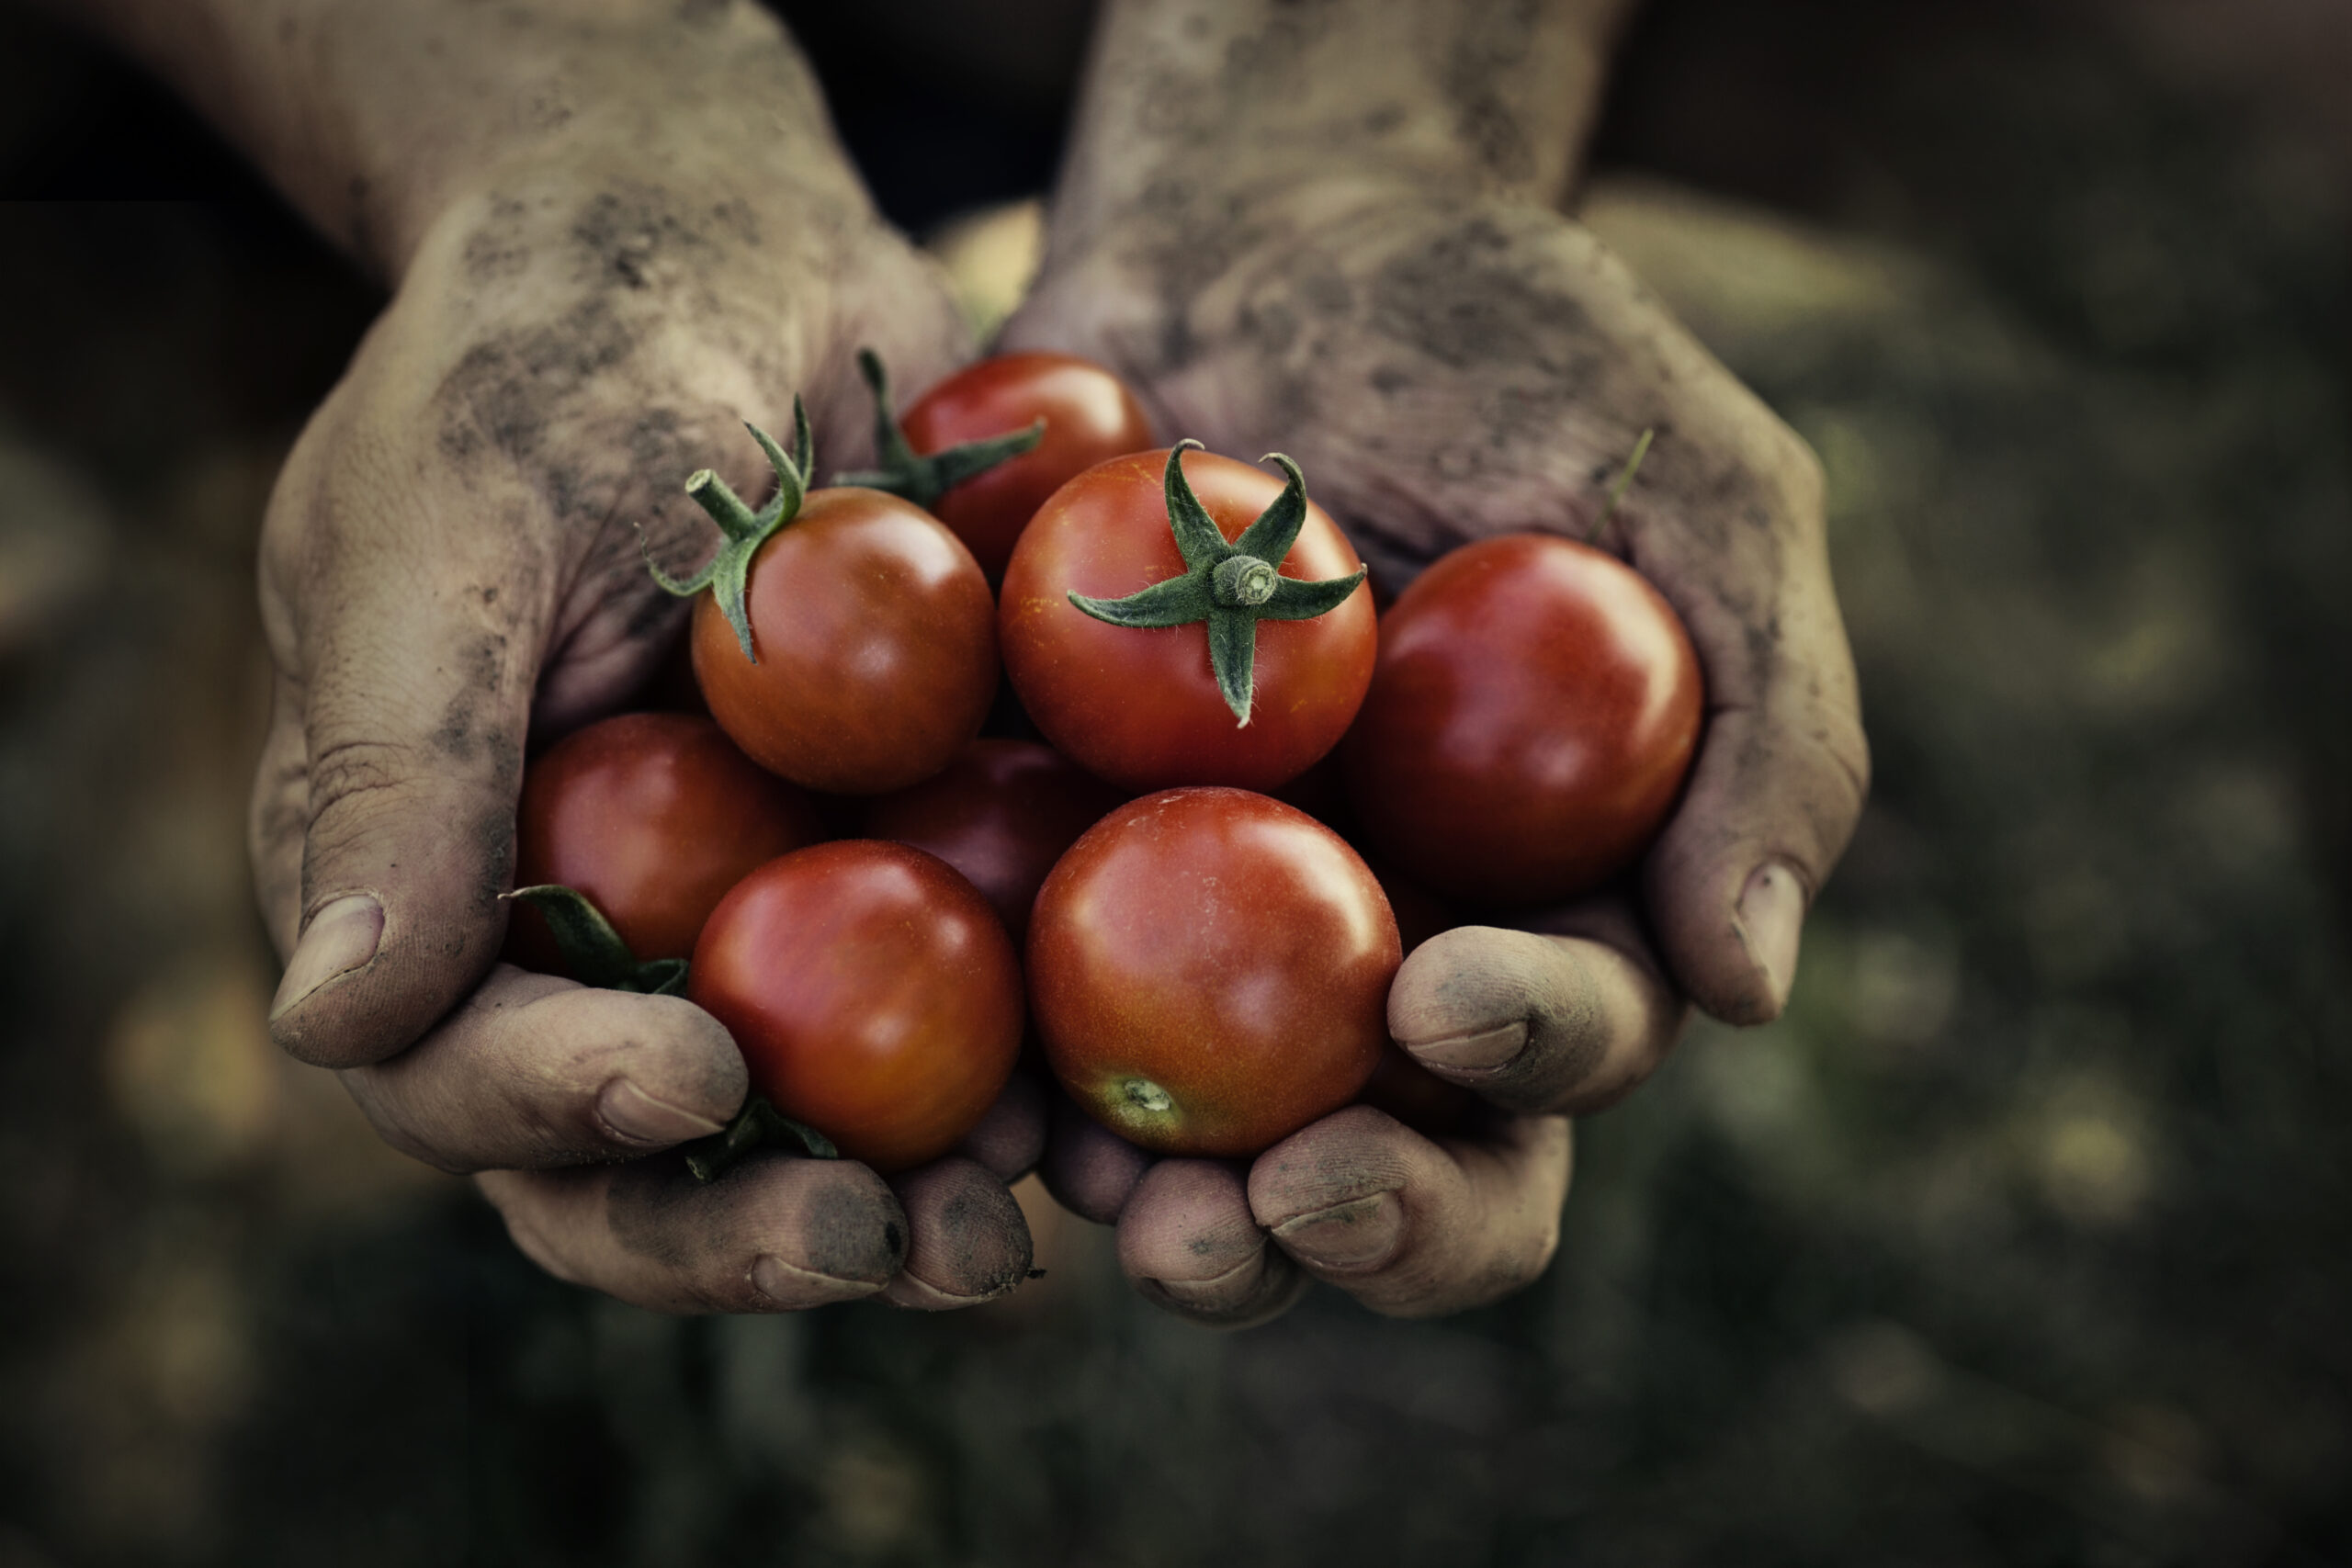 Rockgas LPG enriches tomato growth for Gourmet Mokai